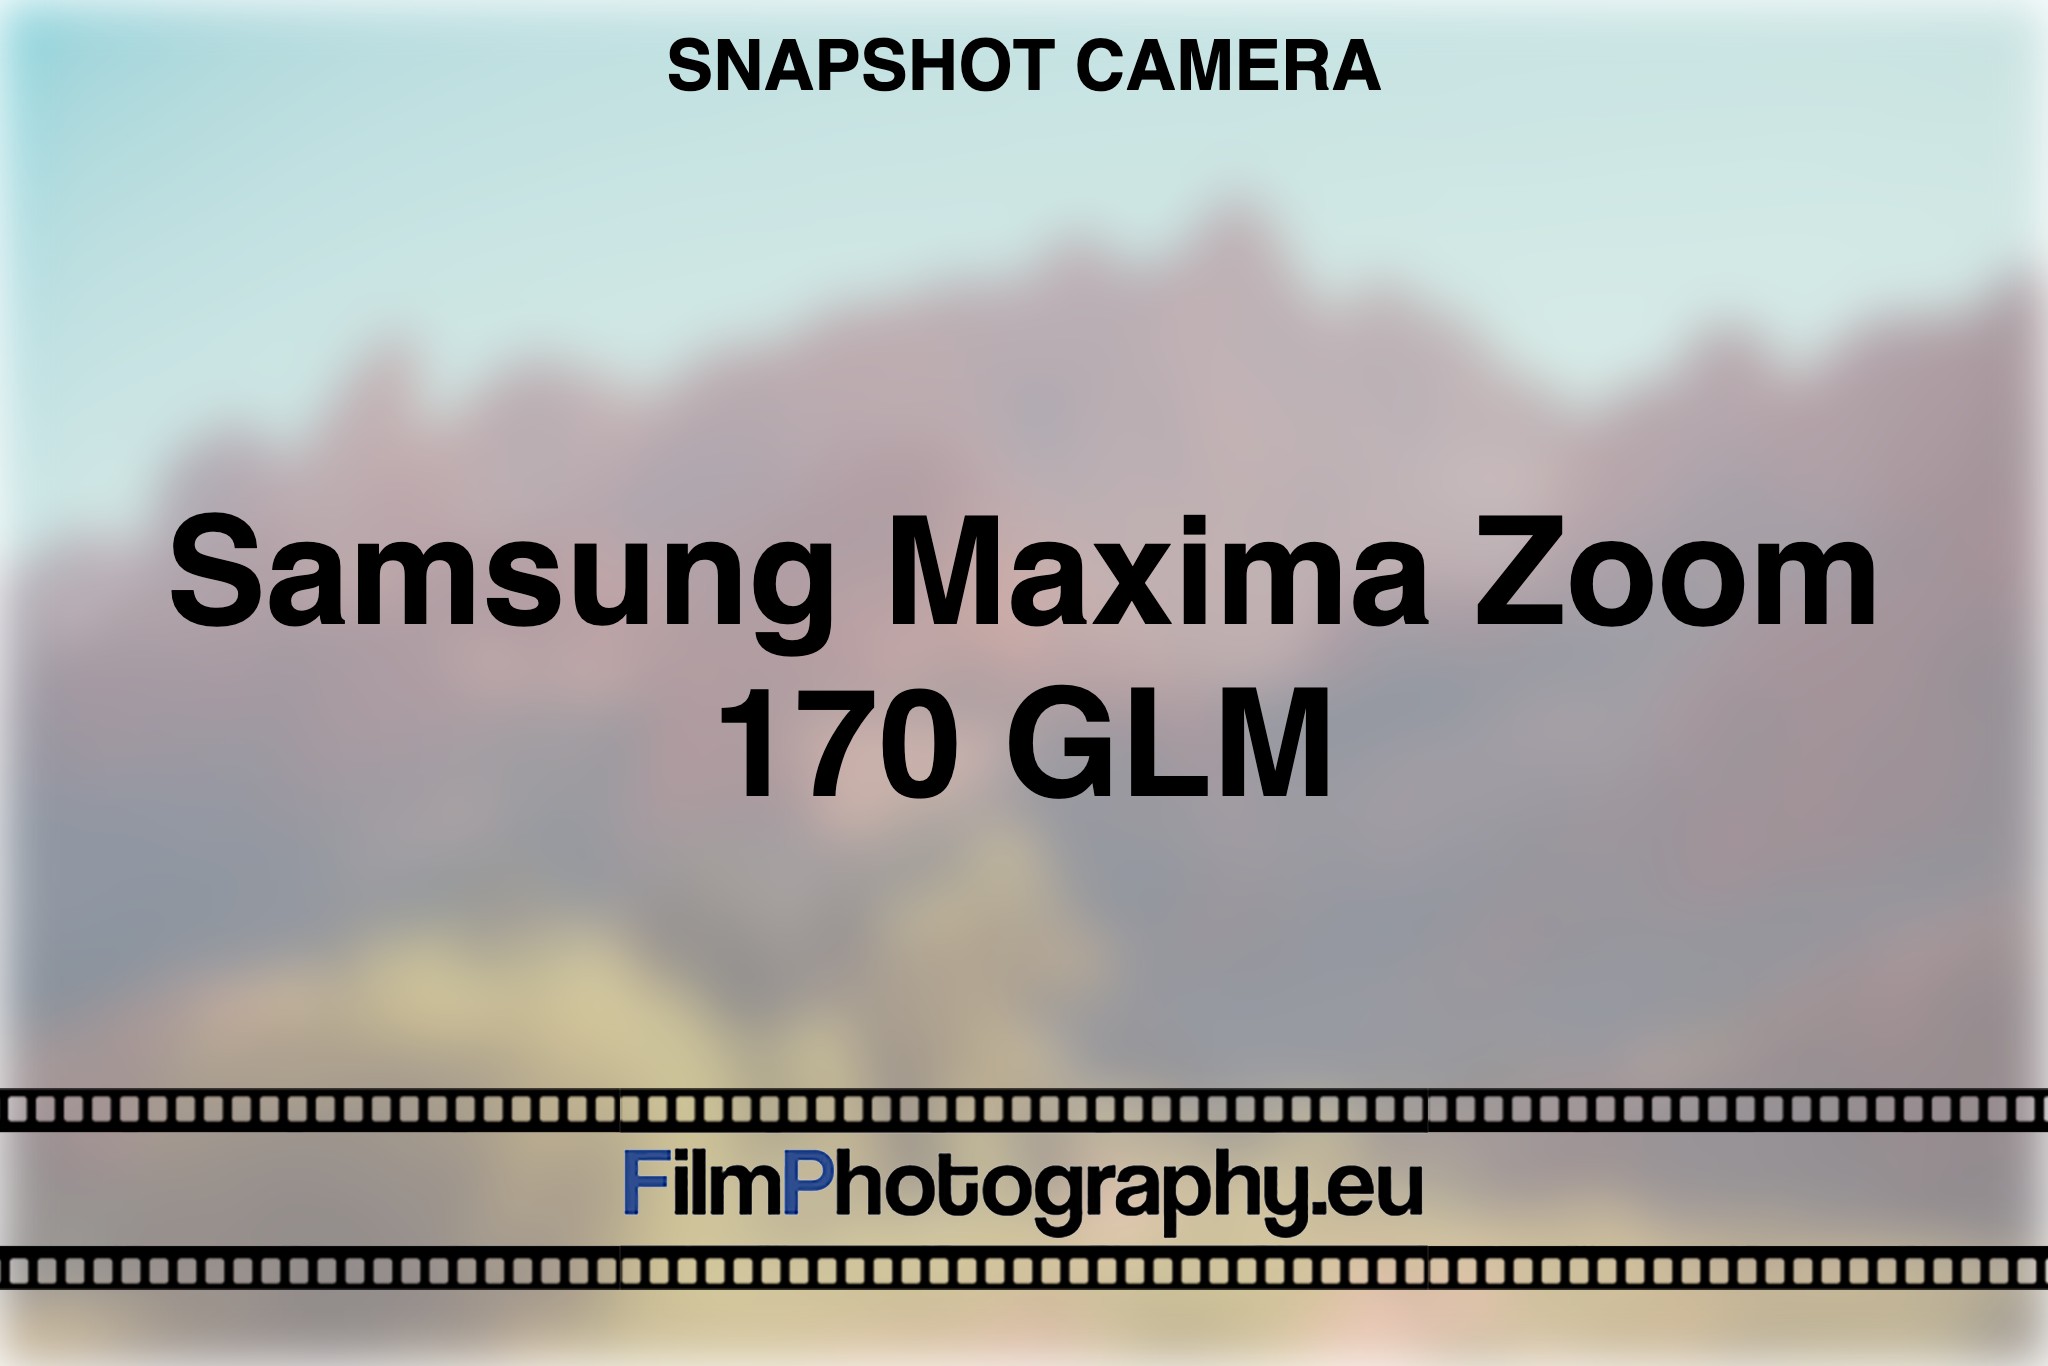 samsung-maxima-zoom-170-glm-snapshot-camera-bnv